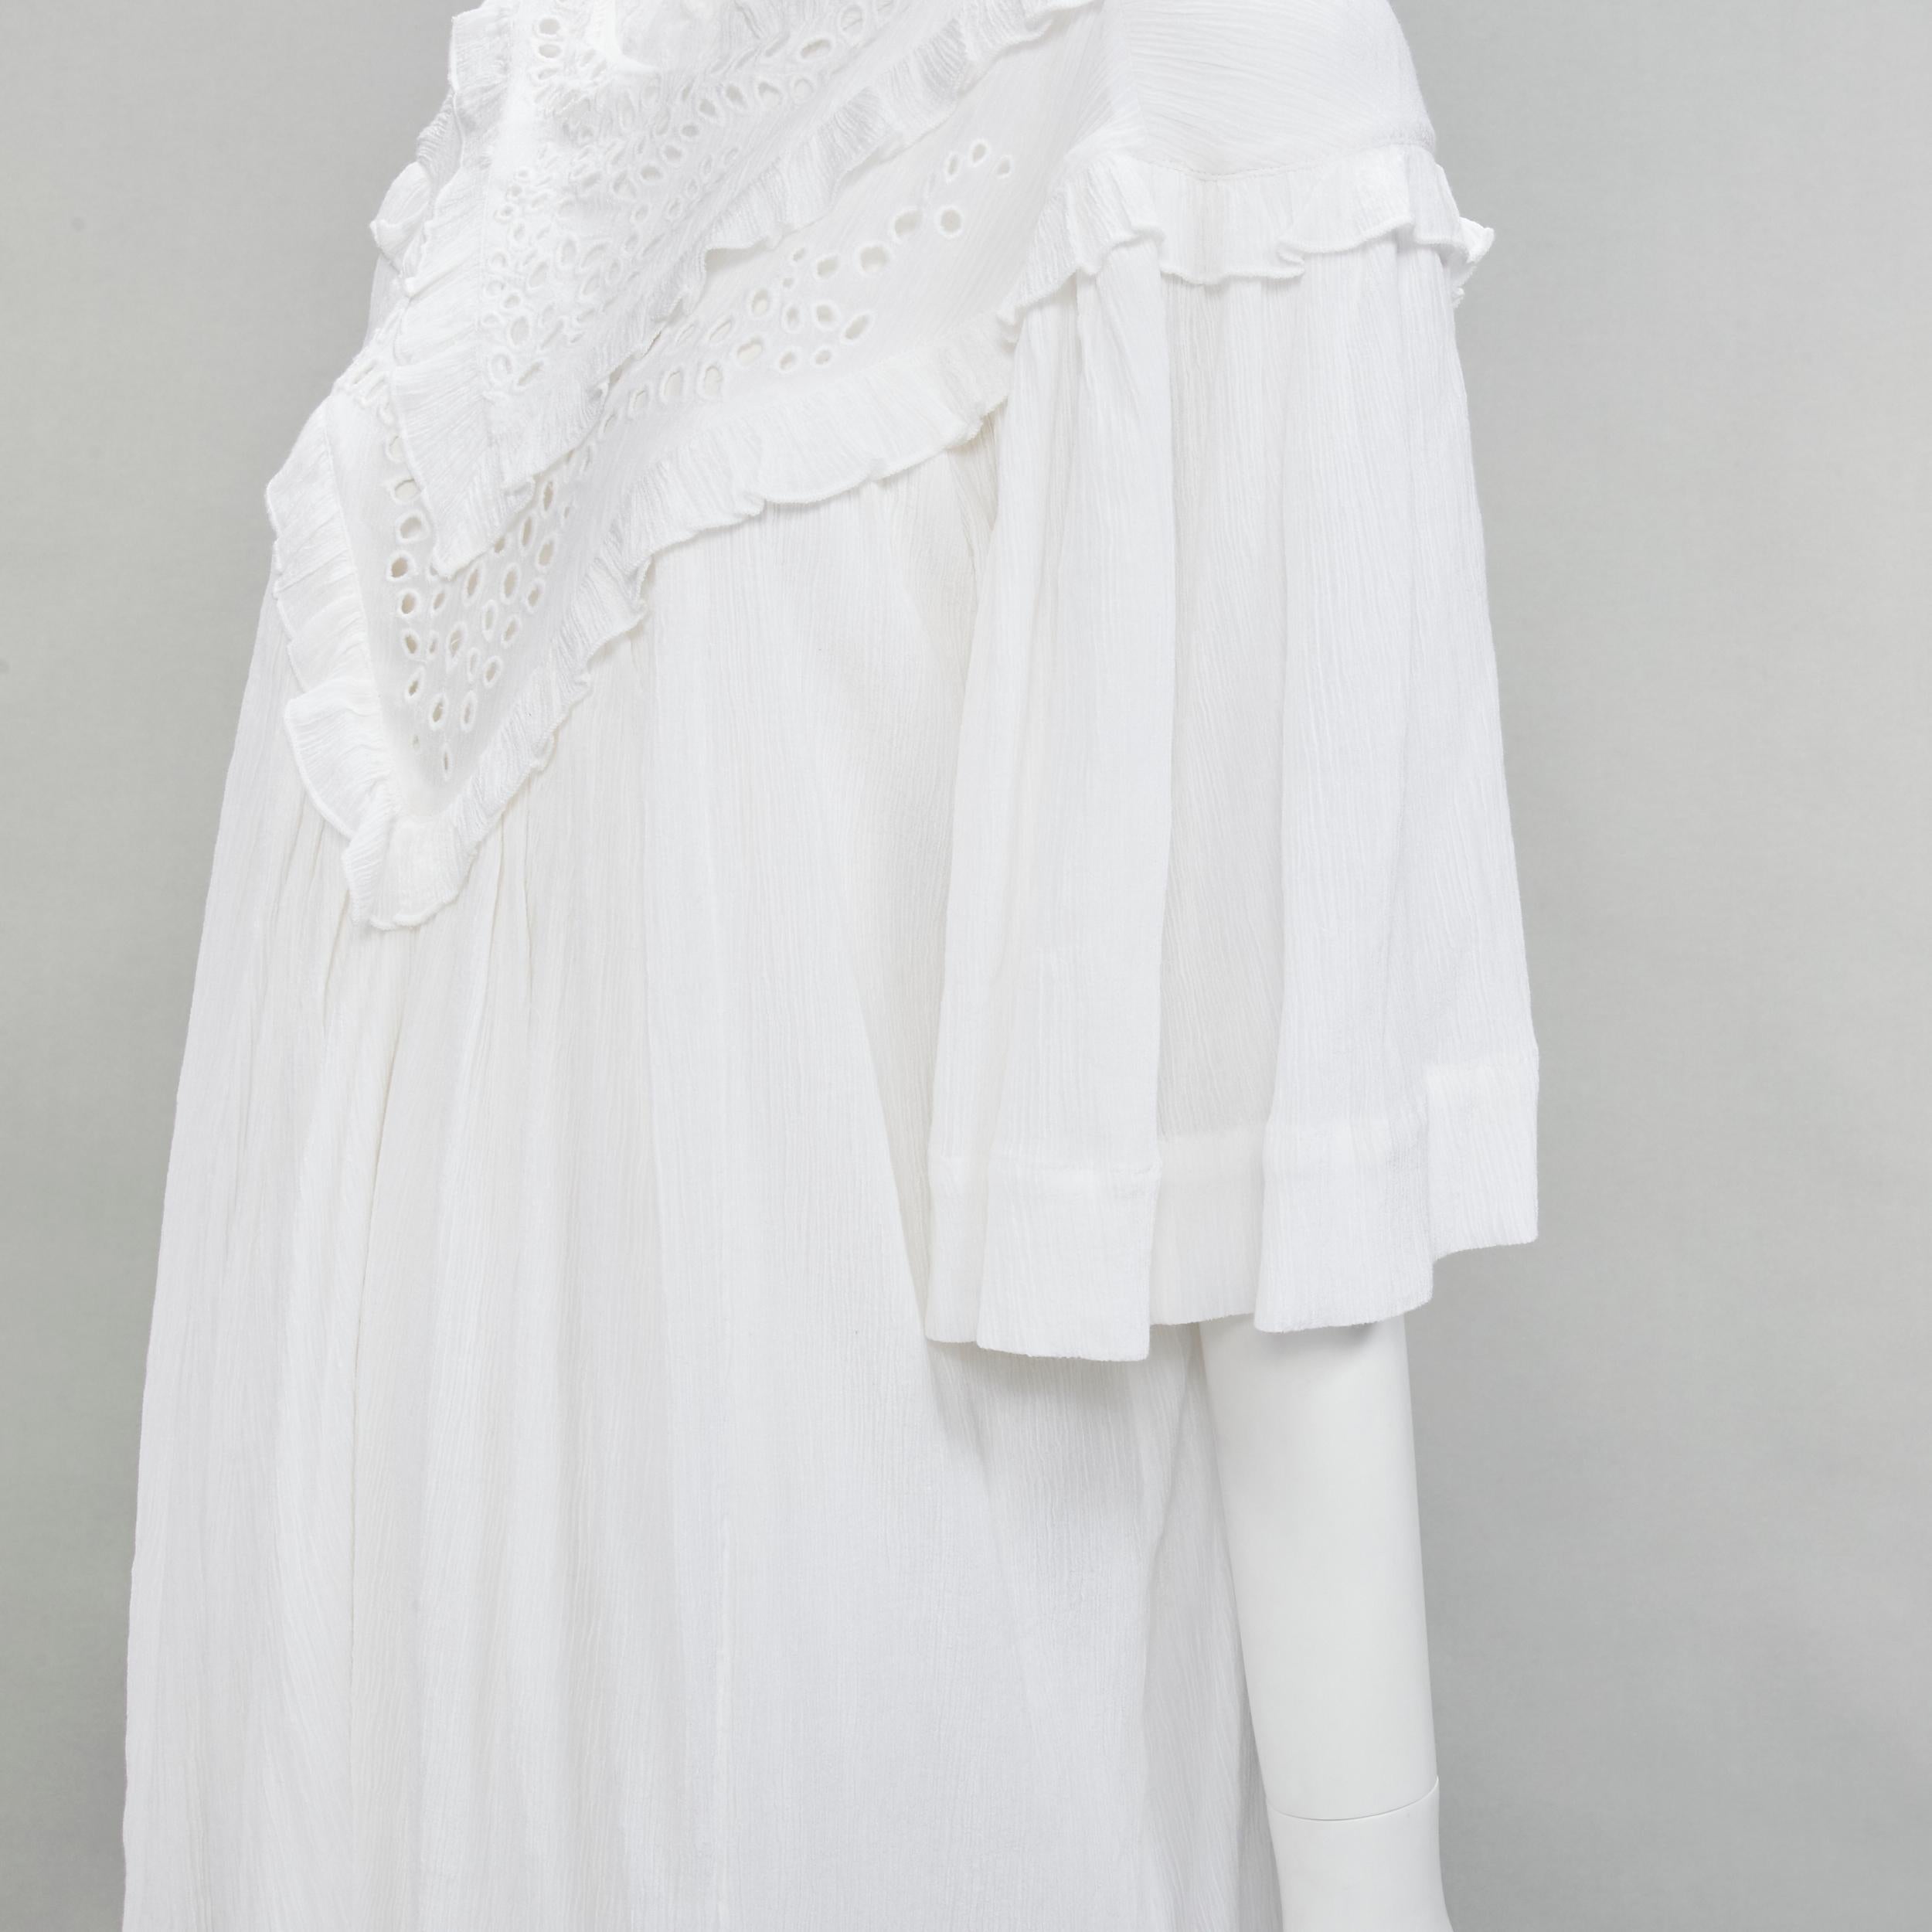 ISABEL MARANT ETOILE white viscose eyelet ruffle collar boho dress FR40 M For Sale 2